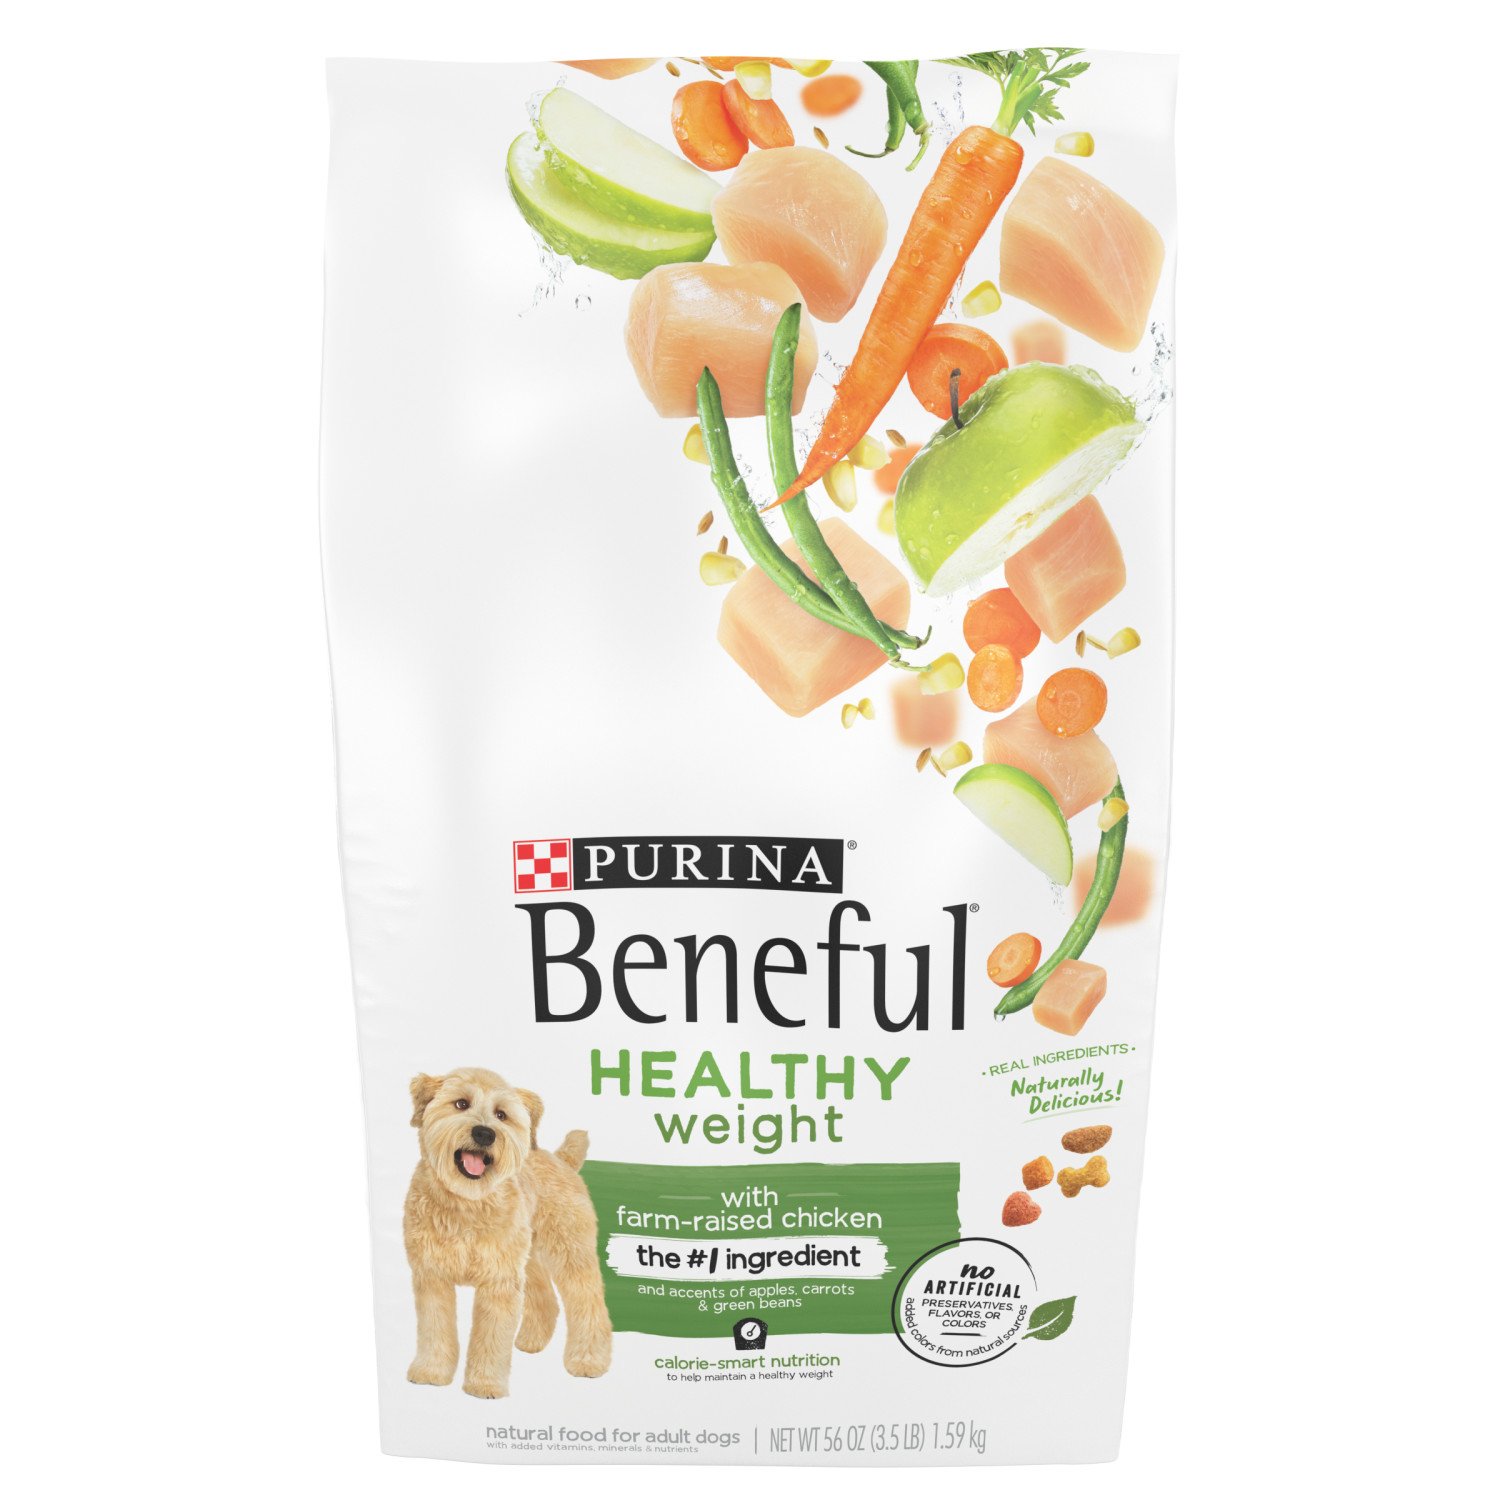 beneful dog food ingredients label